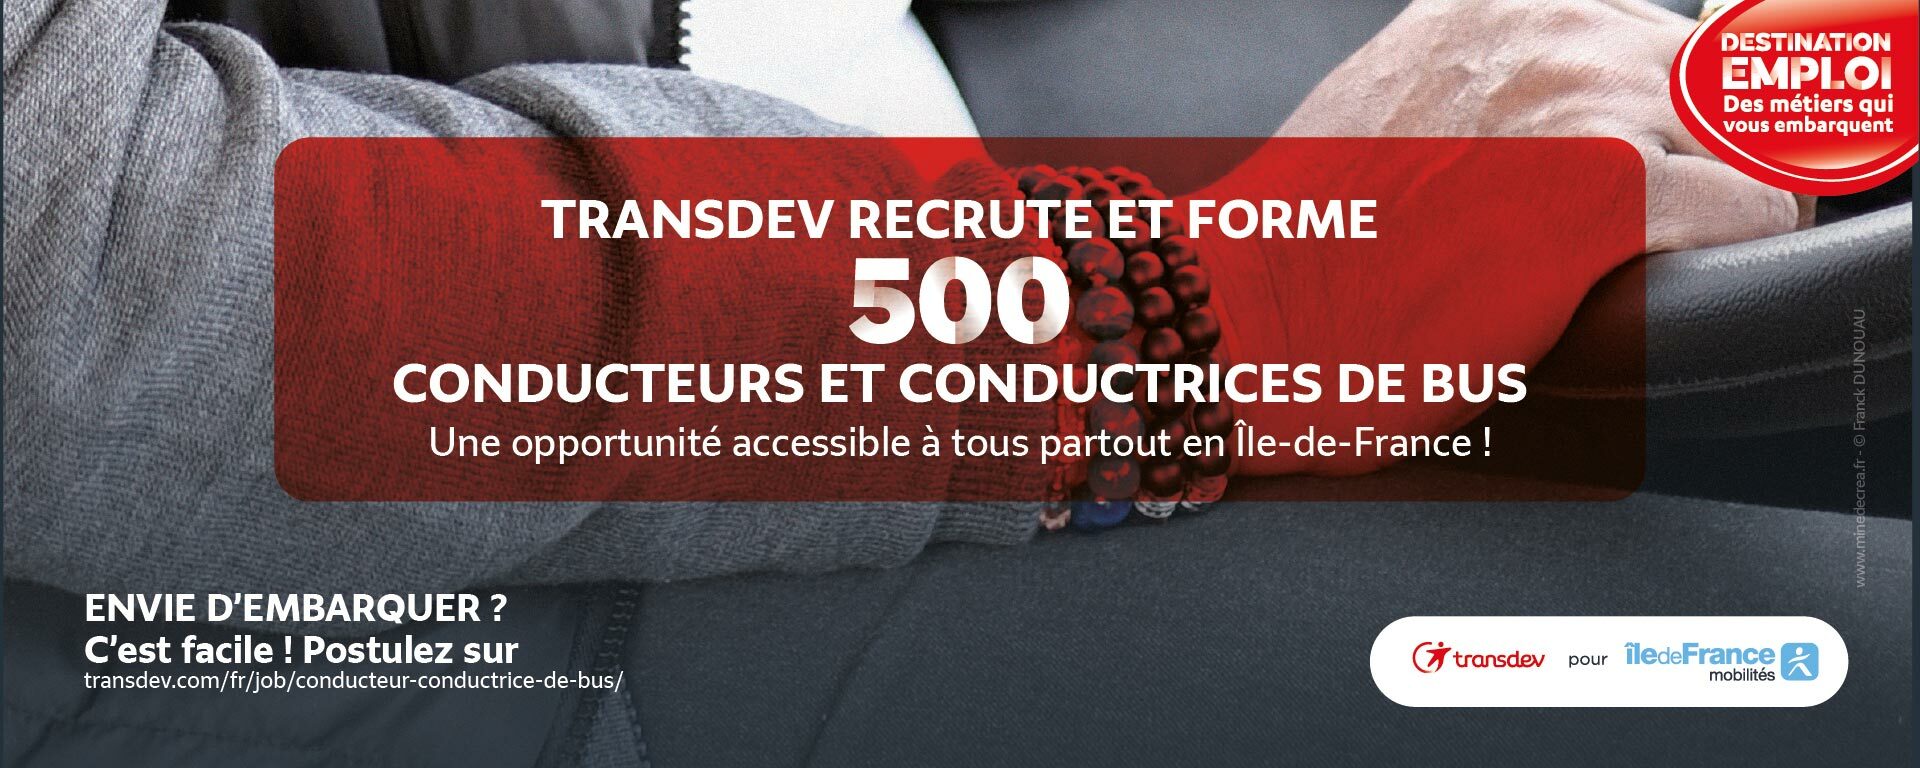 Transdev recrute et forme 500 conducteurs et conductrices de bus partout en Île-de-France